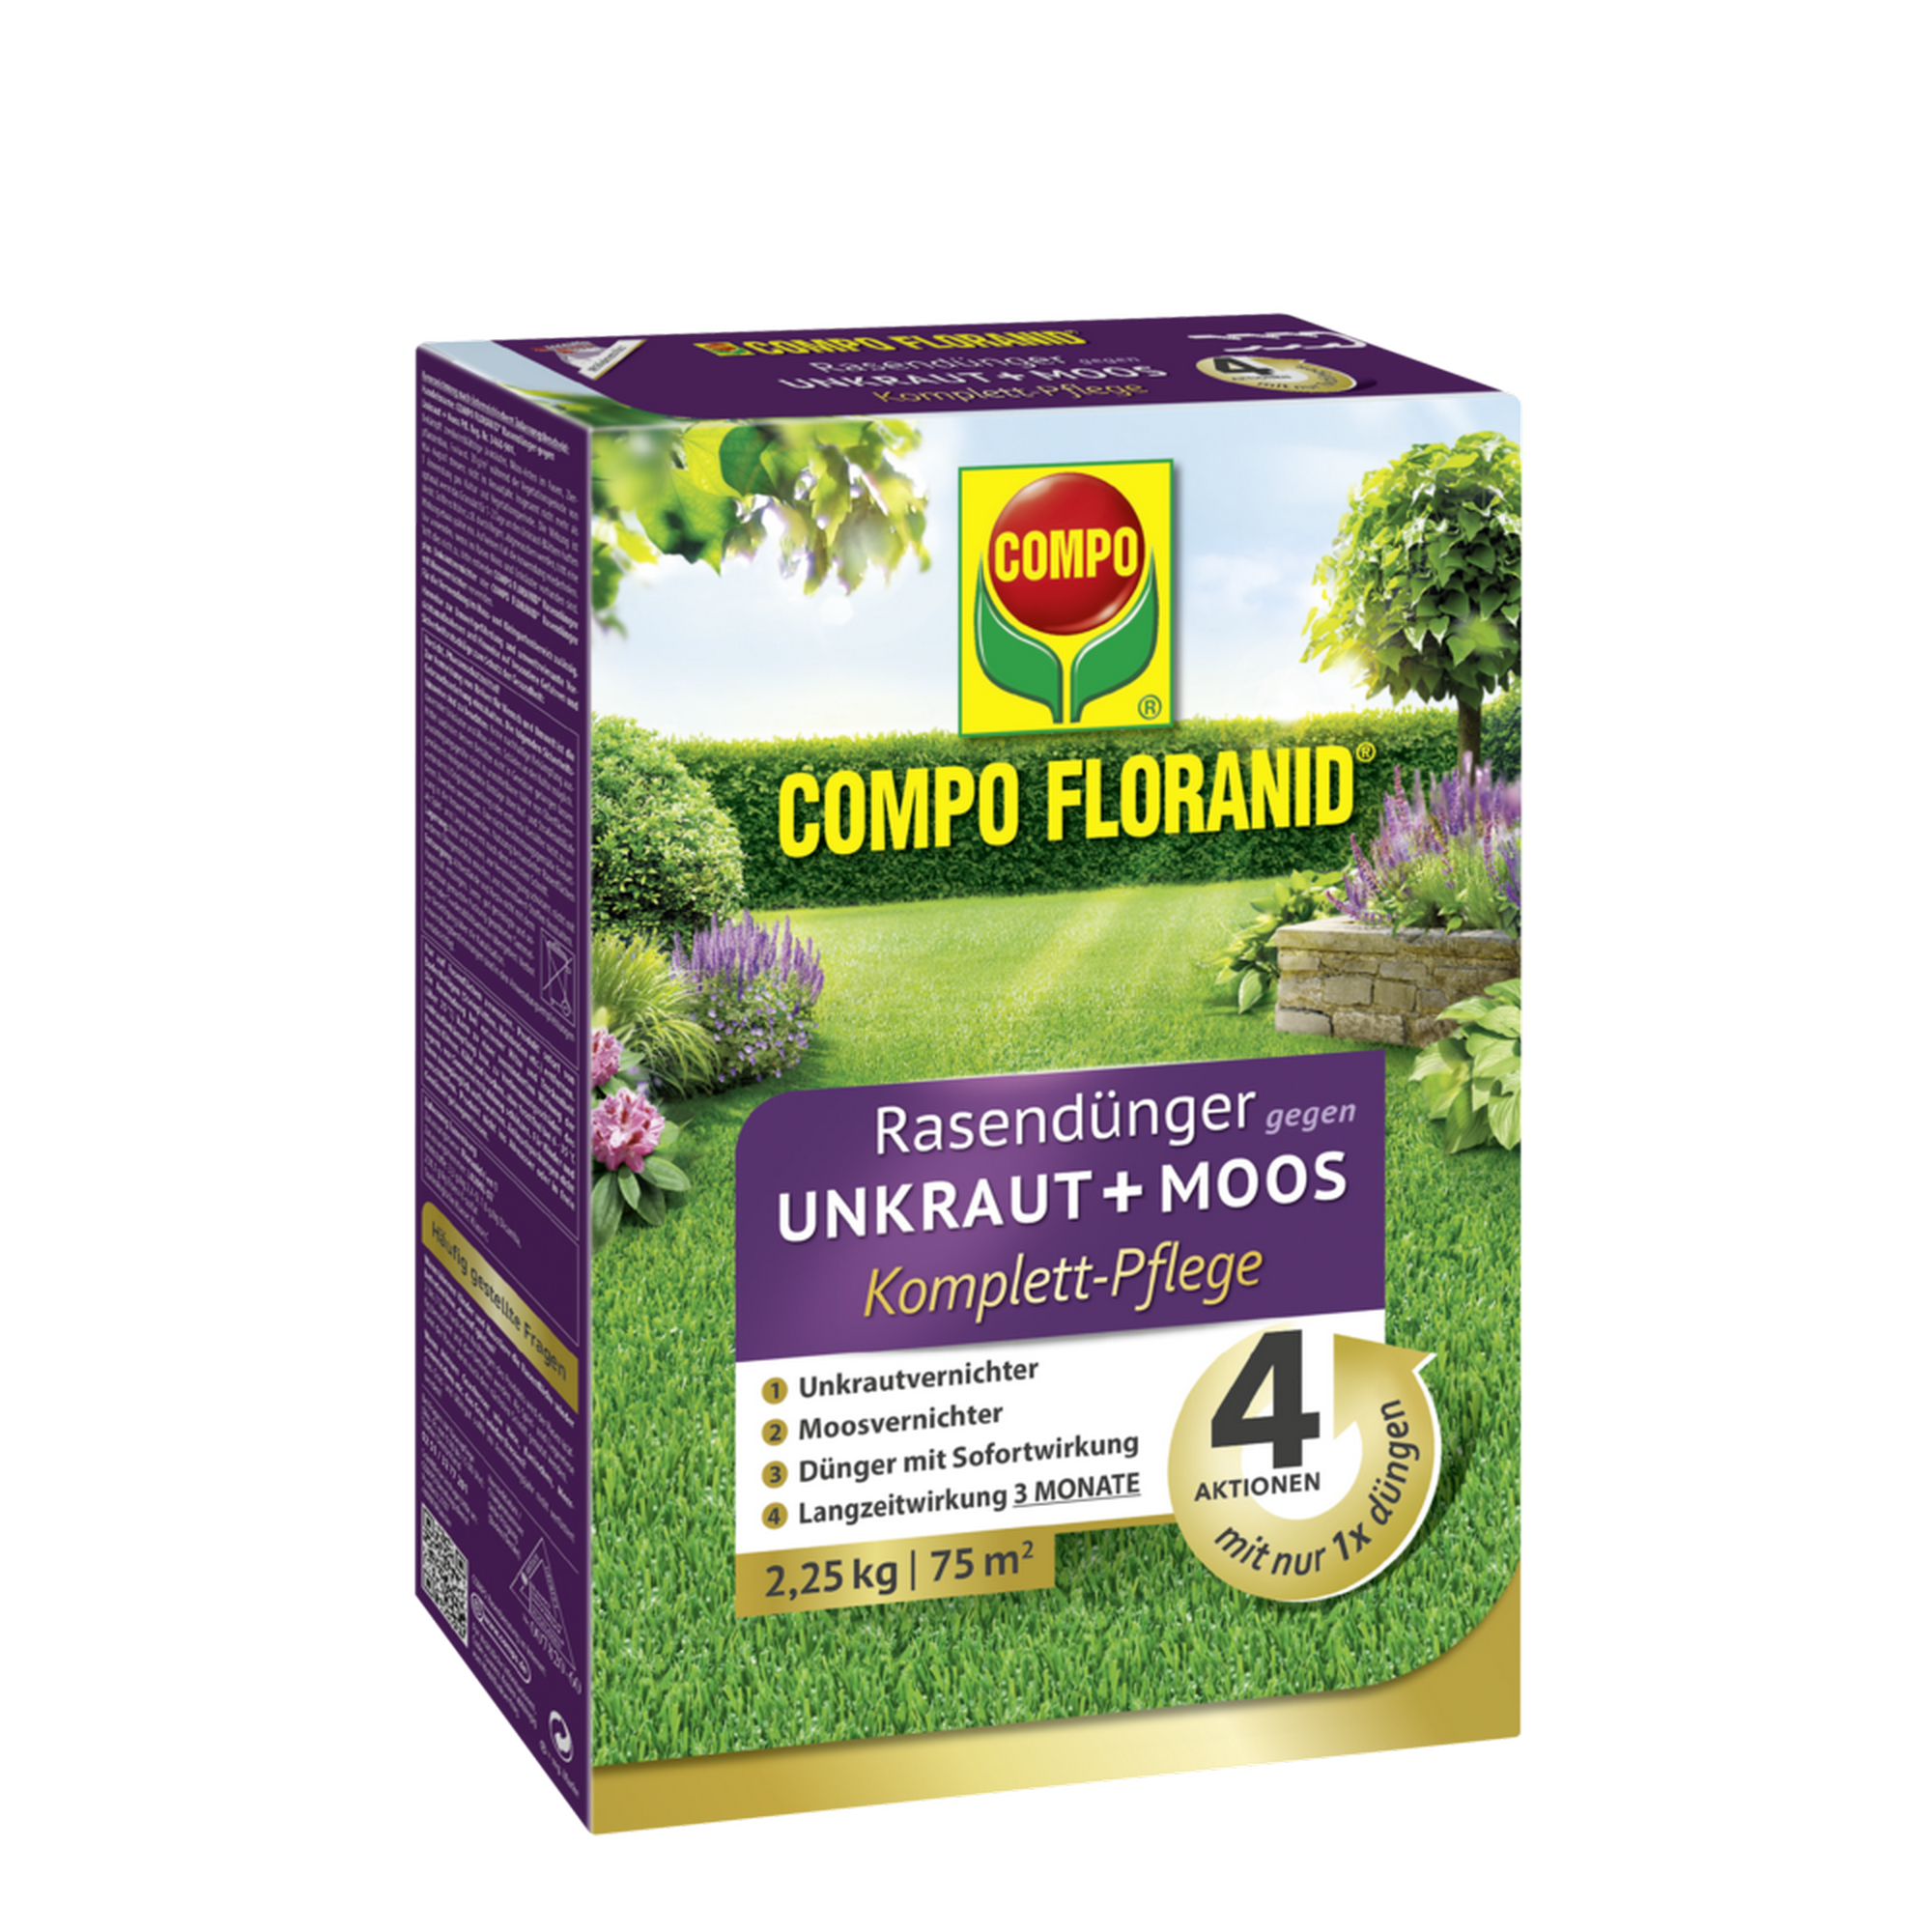 Floranid Rasendünger gegen Unkraut + Moos Komplettpflege 2,25 kg + product picture